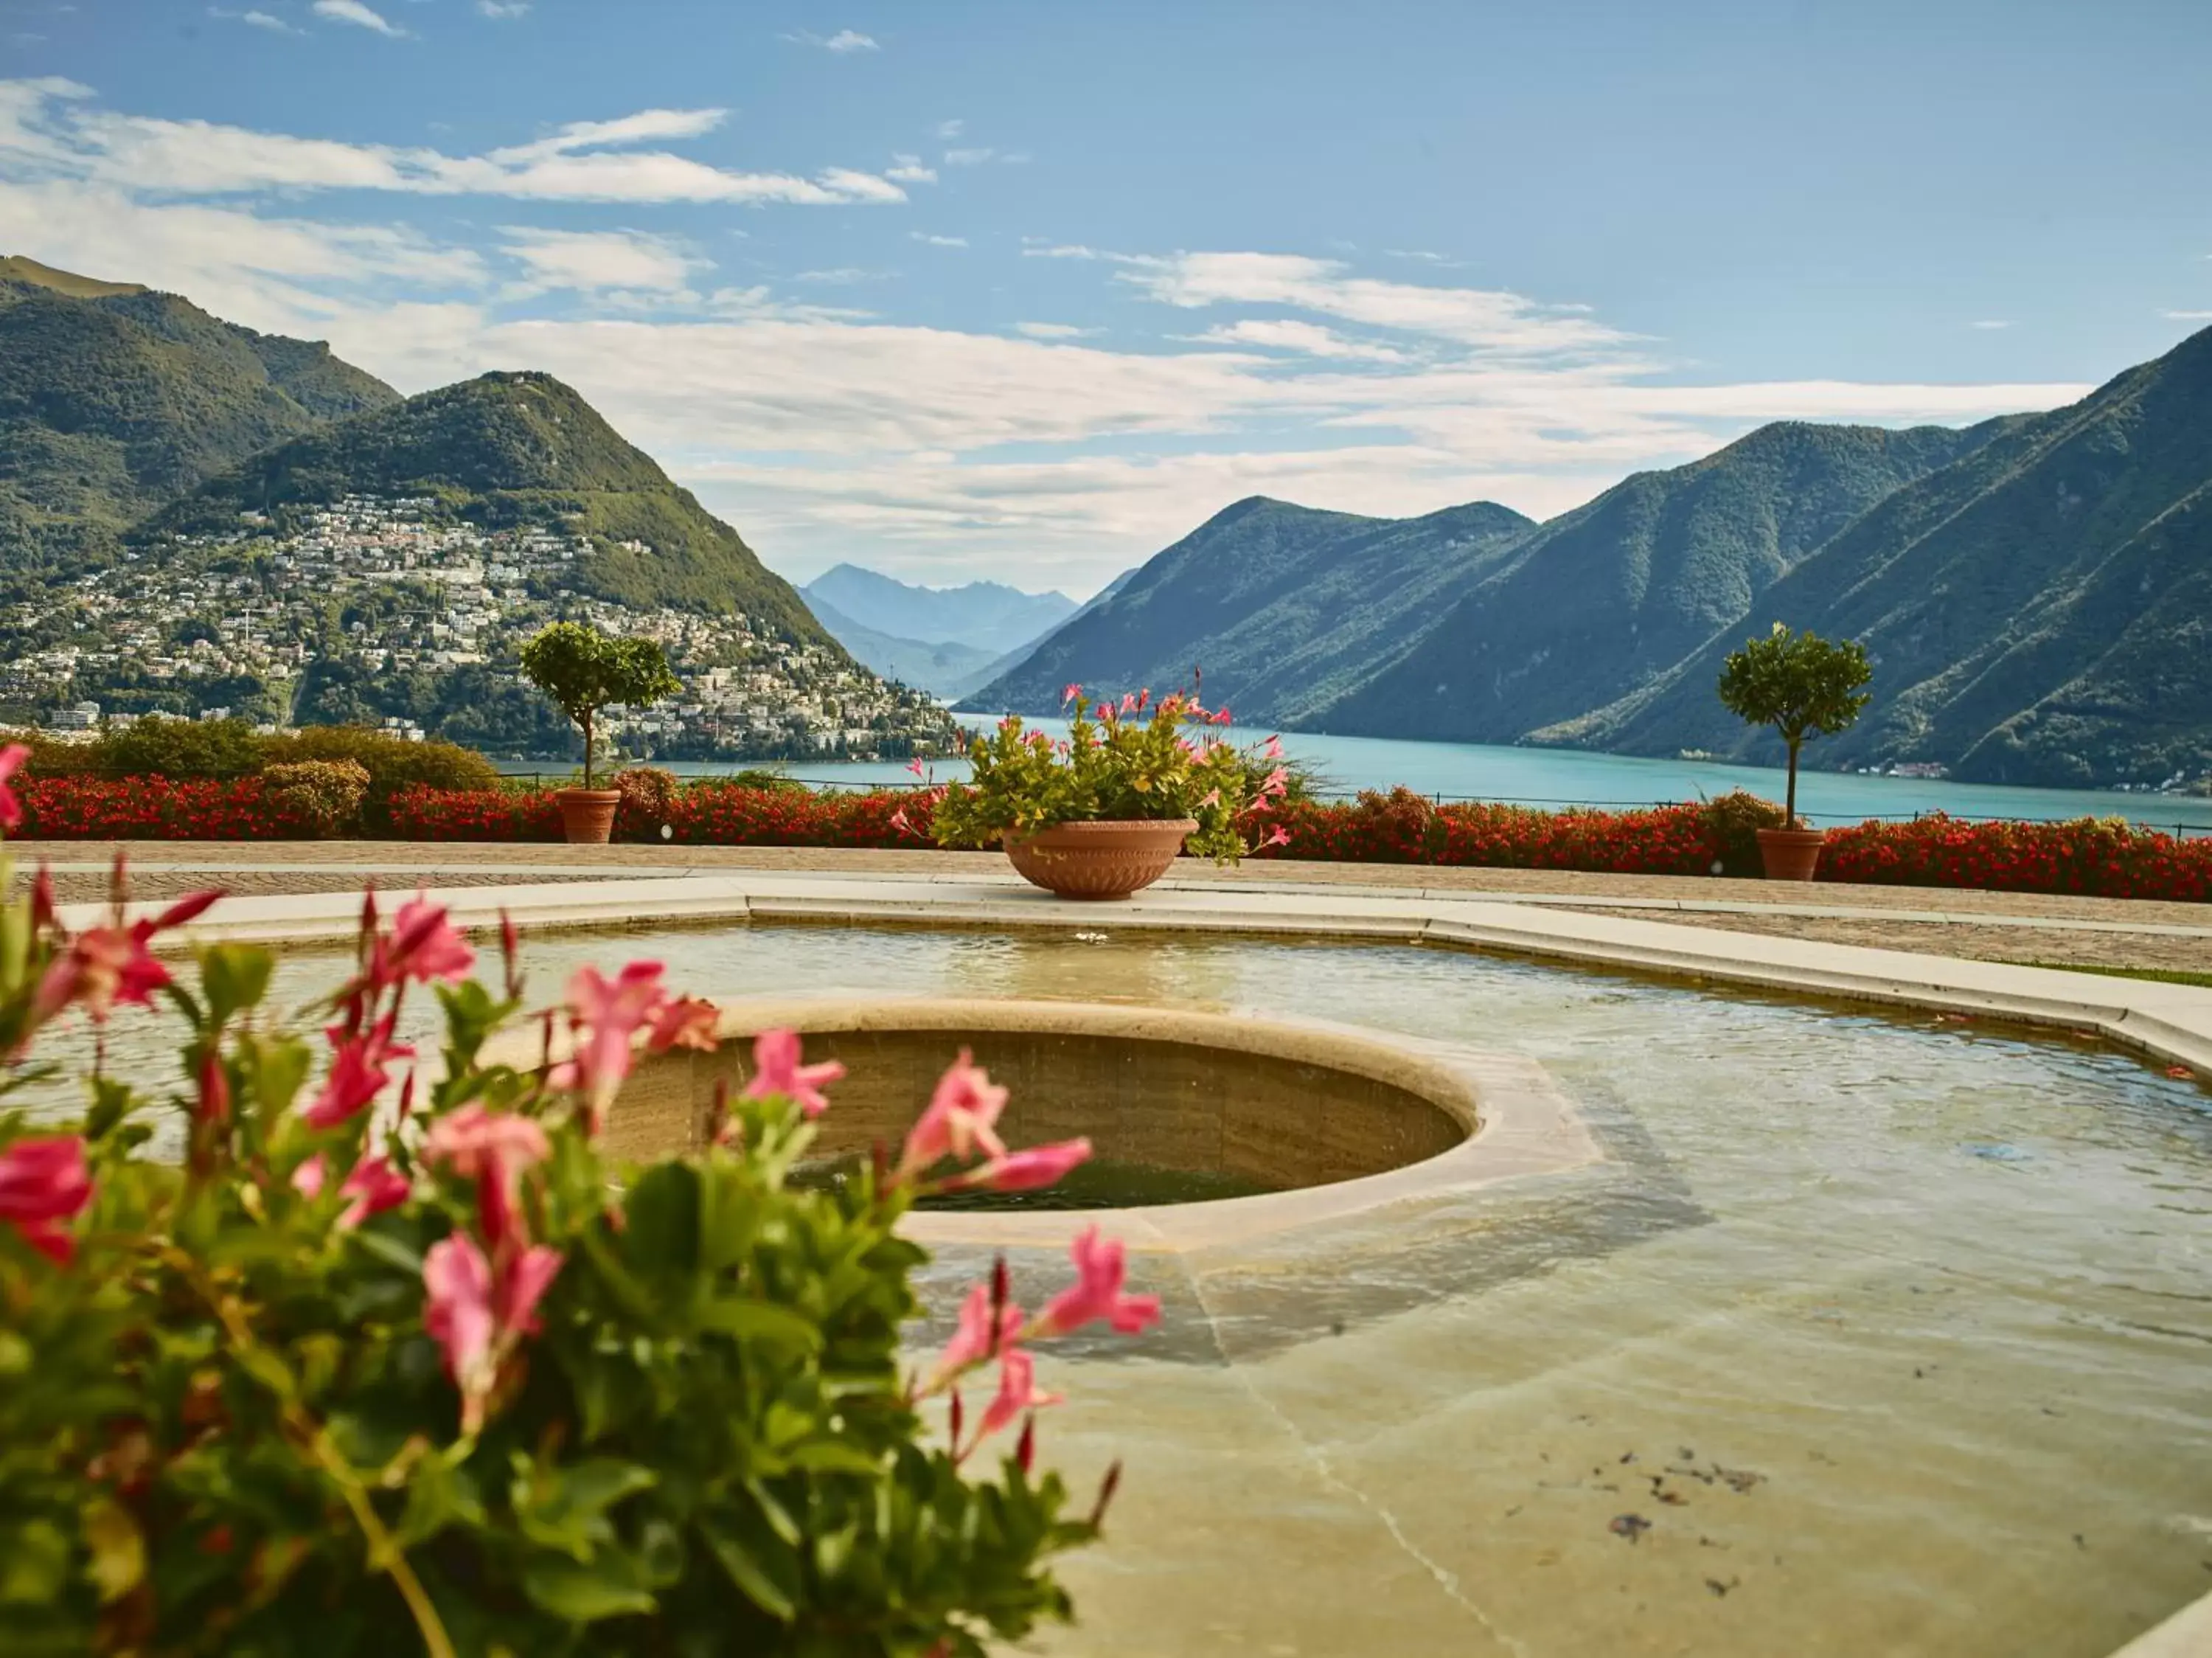 Lake view, Mountain View in Villa Principe Leopoldo - Ticino Hotels Group